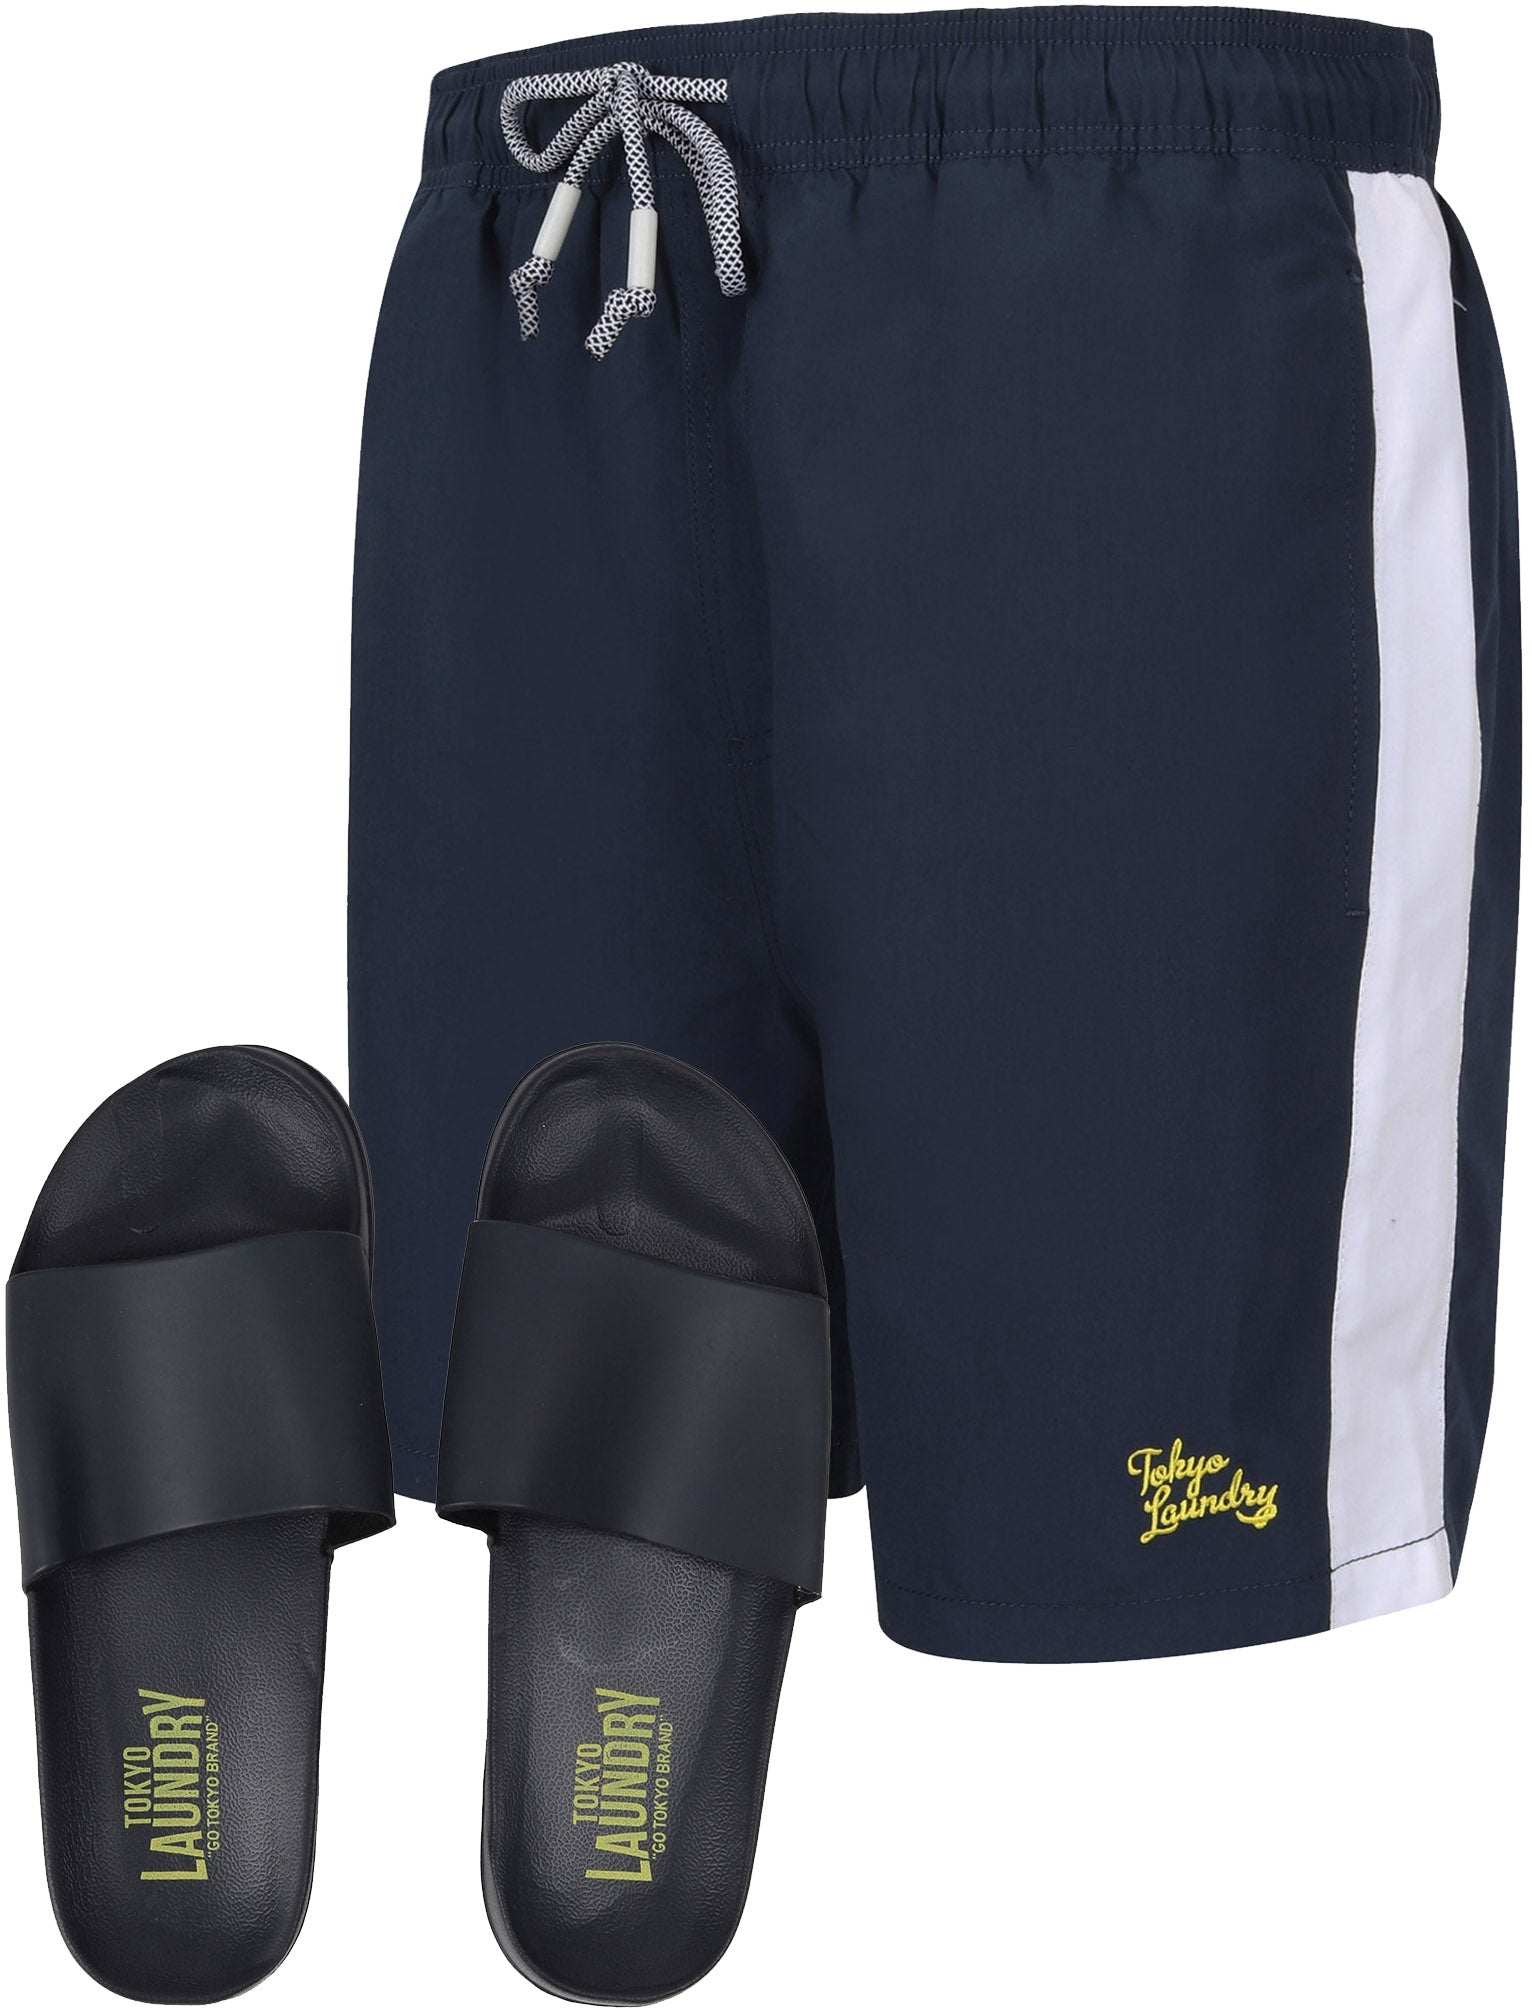 Swim Shorts Velorium Swim Shorts With Free Matching Sliders Set In Iris Navy - Tokyo Laundry / S - Tokyo Laundry